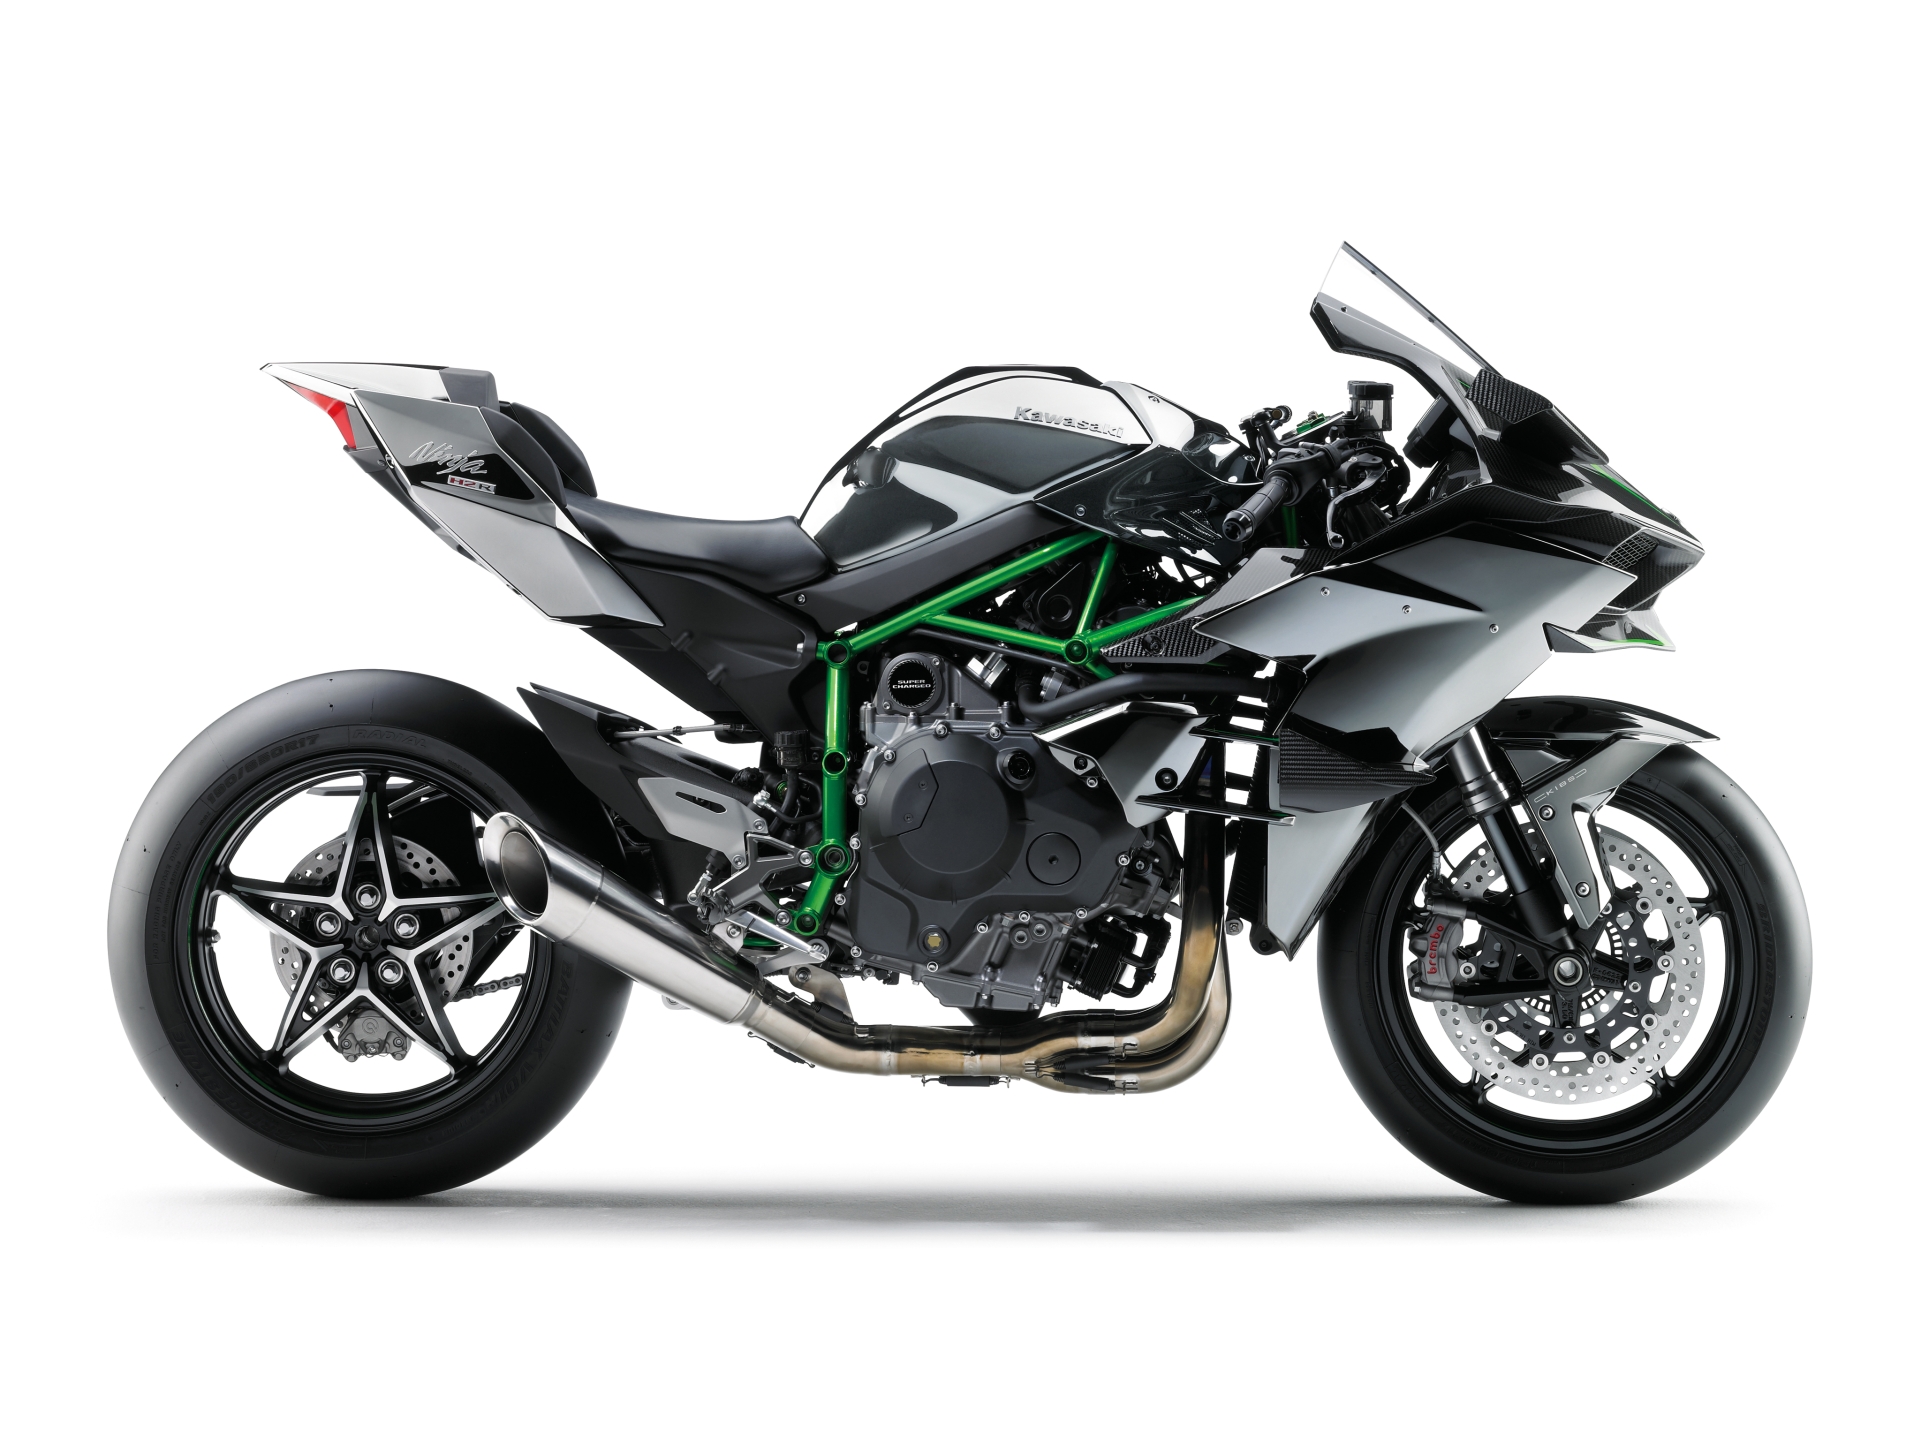 Kawasaki Ninja H2 and H2R Prices Confirmed - autoevolution